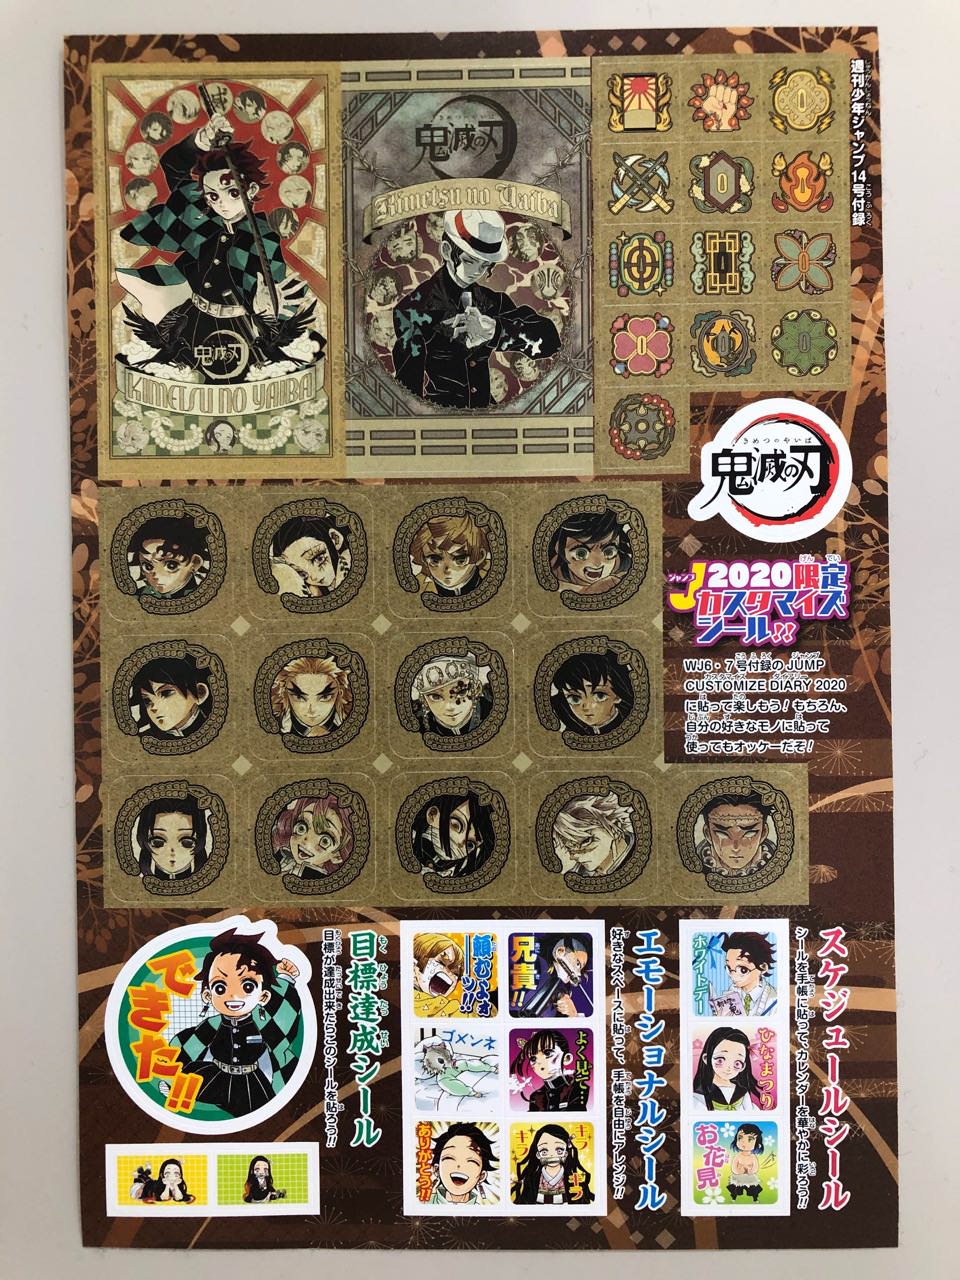 鬼滅の刃 3 2発売の週刊少年ジャンプ14号を購入で限定シールプレゼント